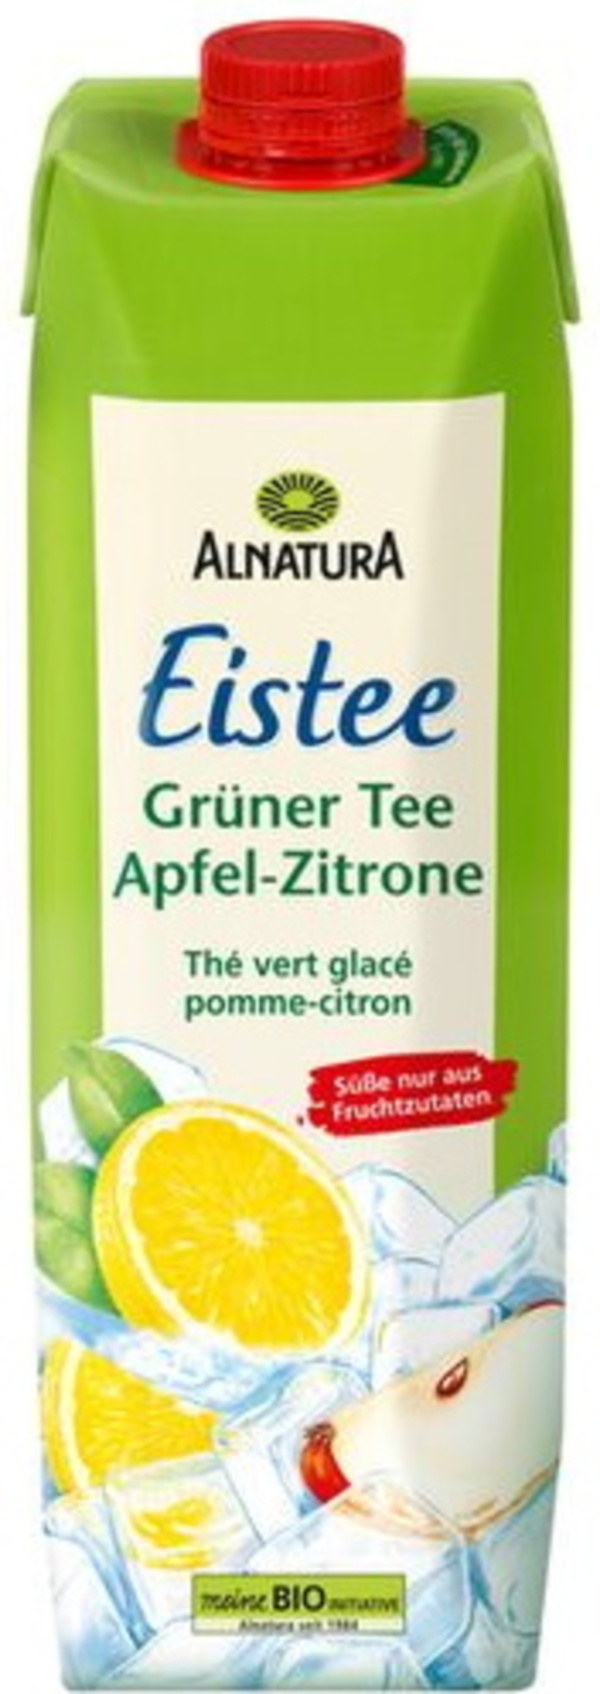 Bild 1 von Alnatura Bio Eistee Grüner Tee Apfel-Zitrone 1L